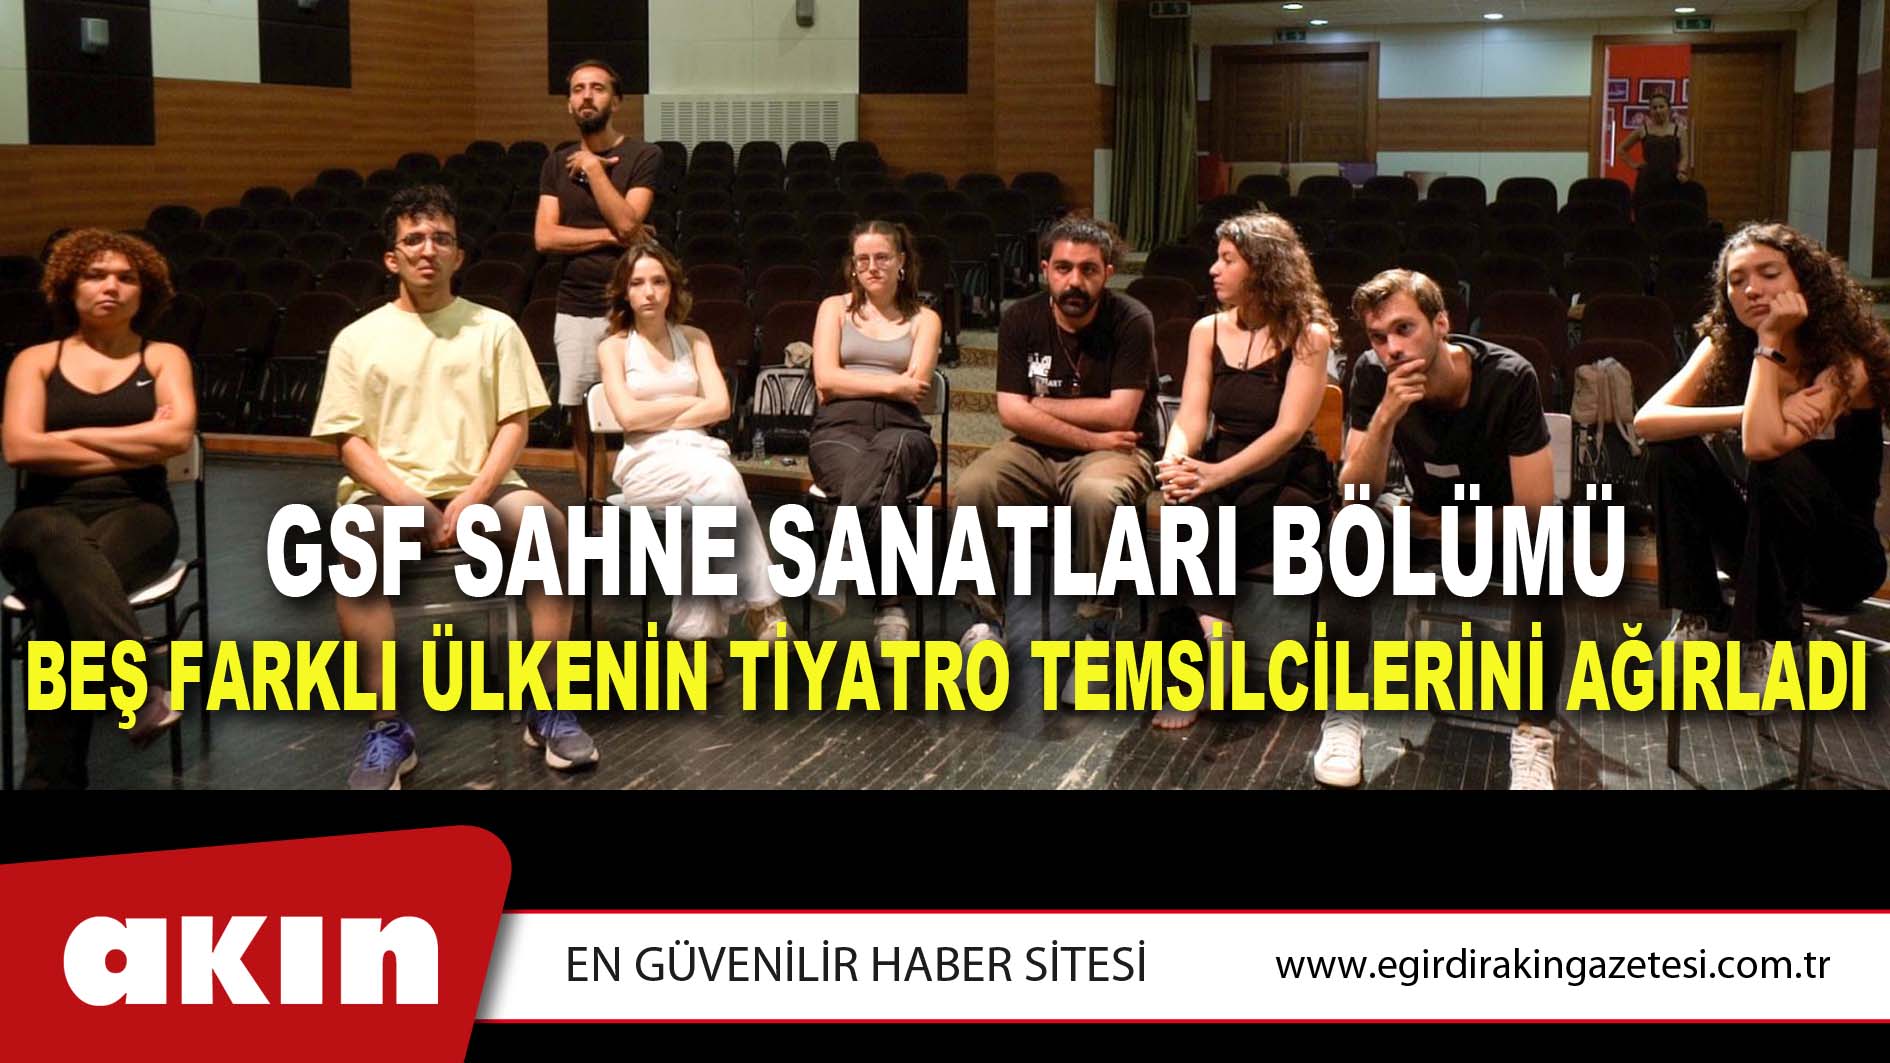 GSF Sahne Sanatları Bölümü  Beş Farklı Ülkenin Tiyatro Temsilcilerini Ağırladı